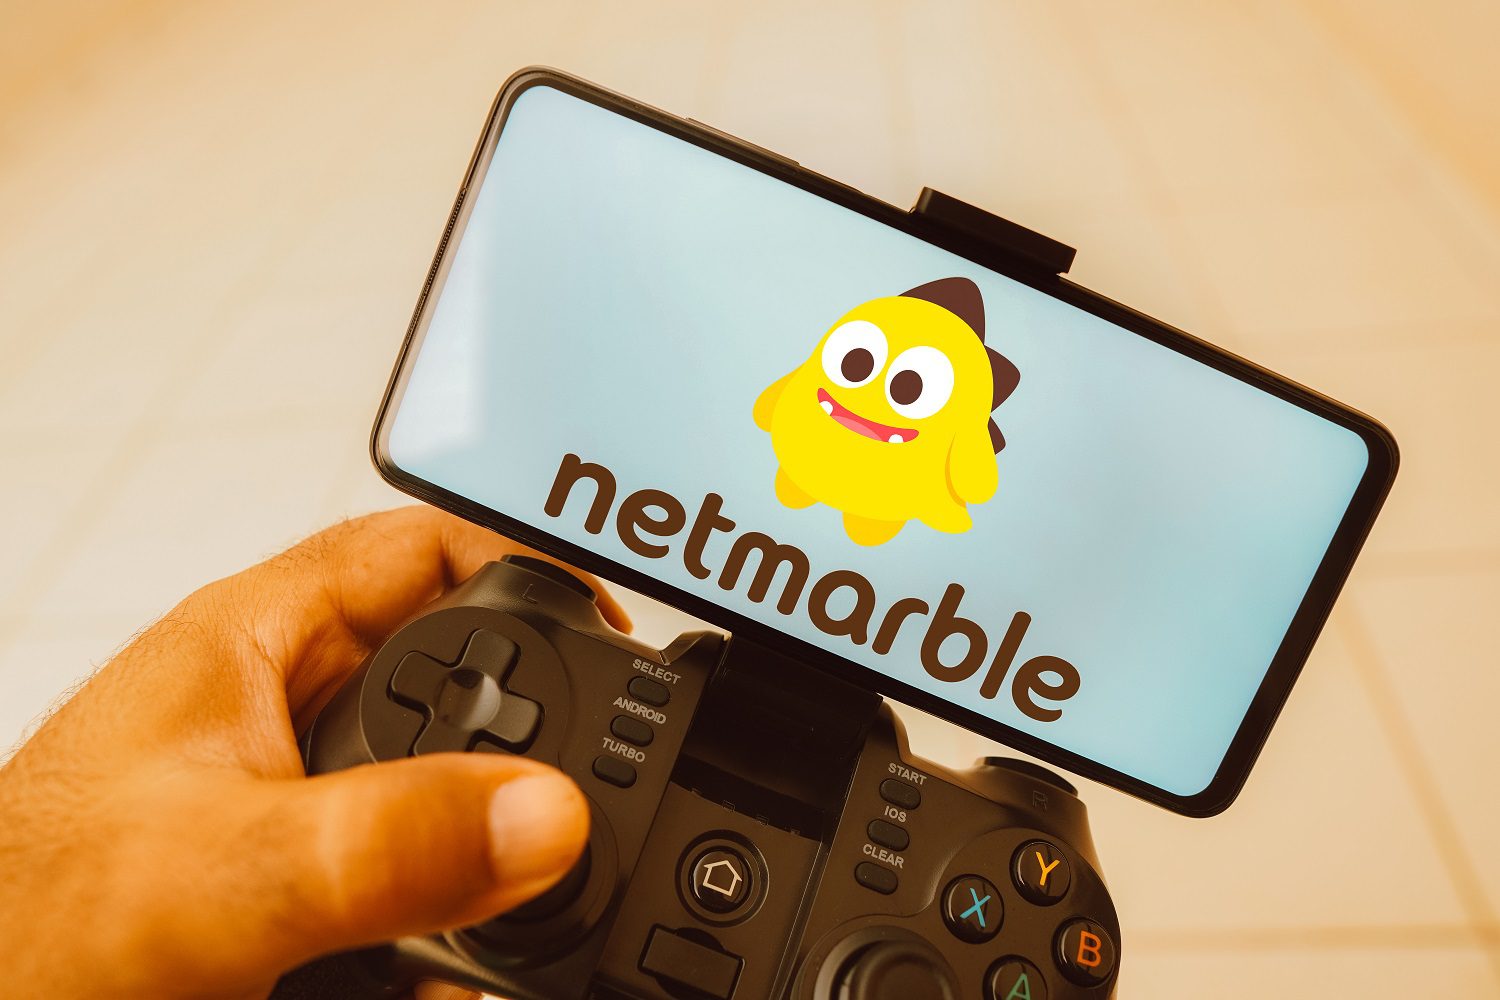 Una persona sostiene un joystick conectado a un teléfono móvil con el logotipo de Netmarble en la pantalla del teléfono.